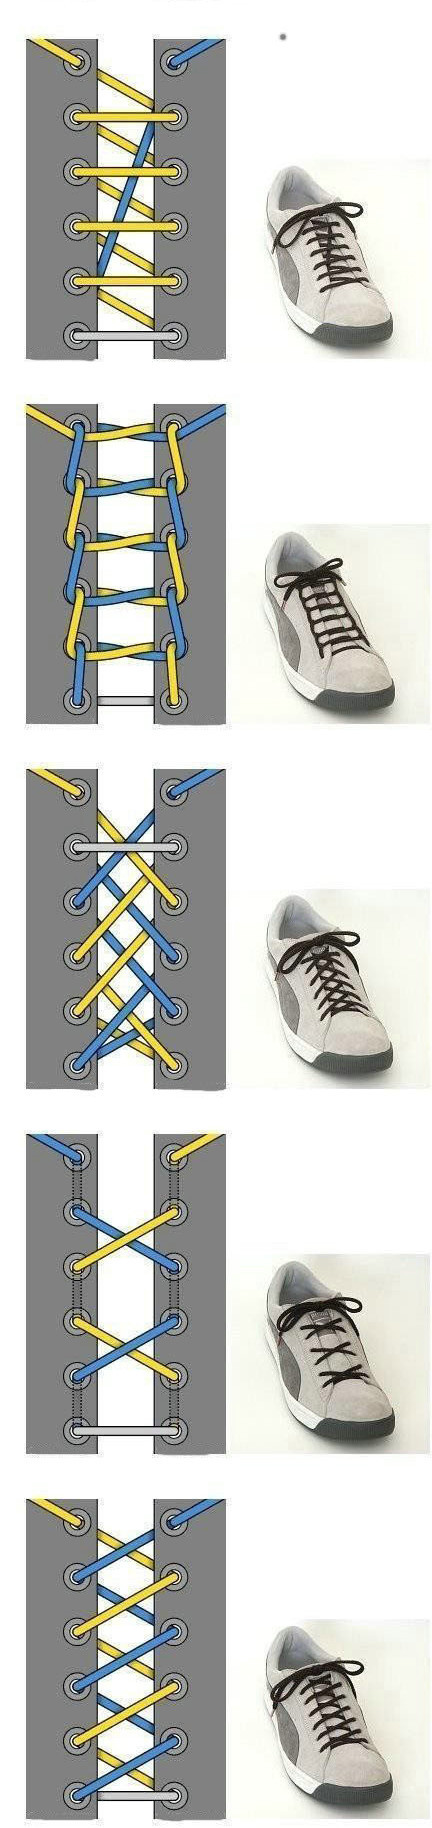 Шнуровка кроссовок с 6 дырками мужские